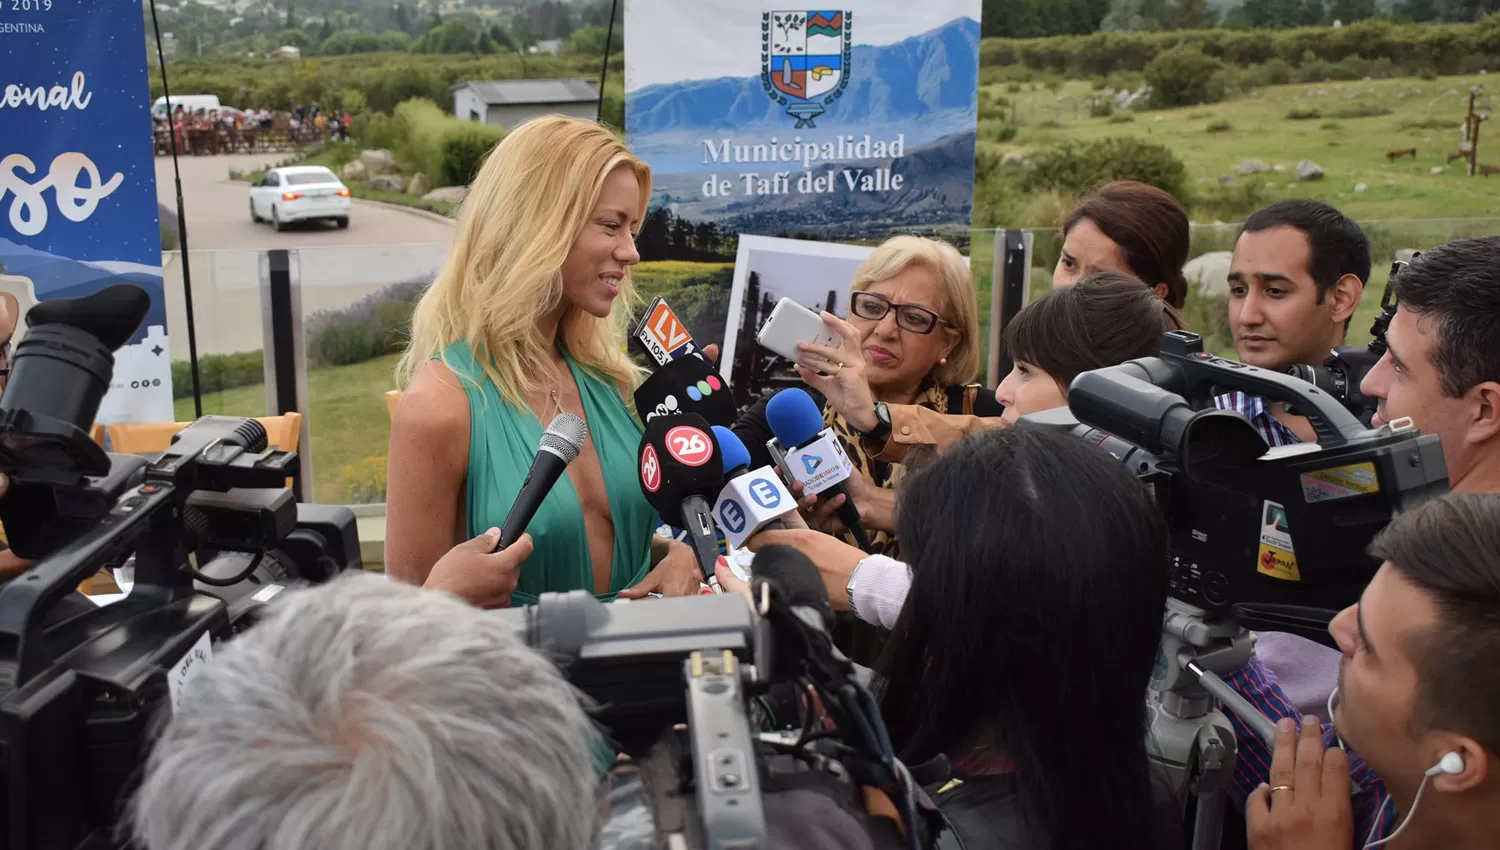 DESMINTIENDO. La Municipalidad de Tafí del Valle desmintió los rumores sobre Nicole Neumann y sus comentarios.